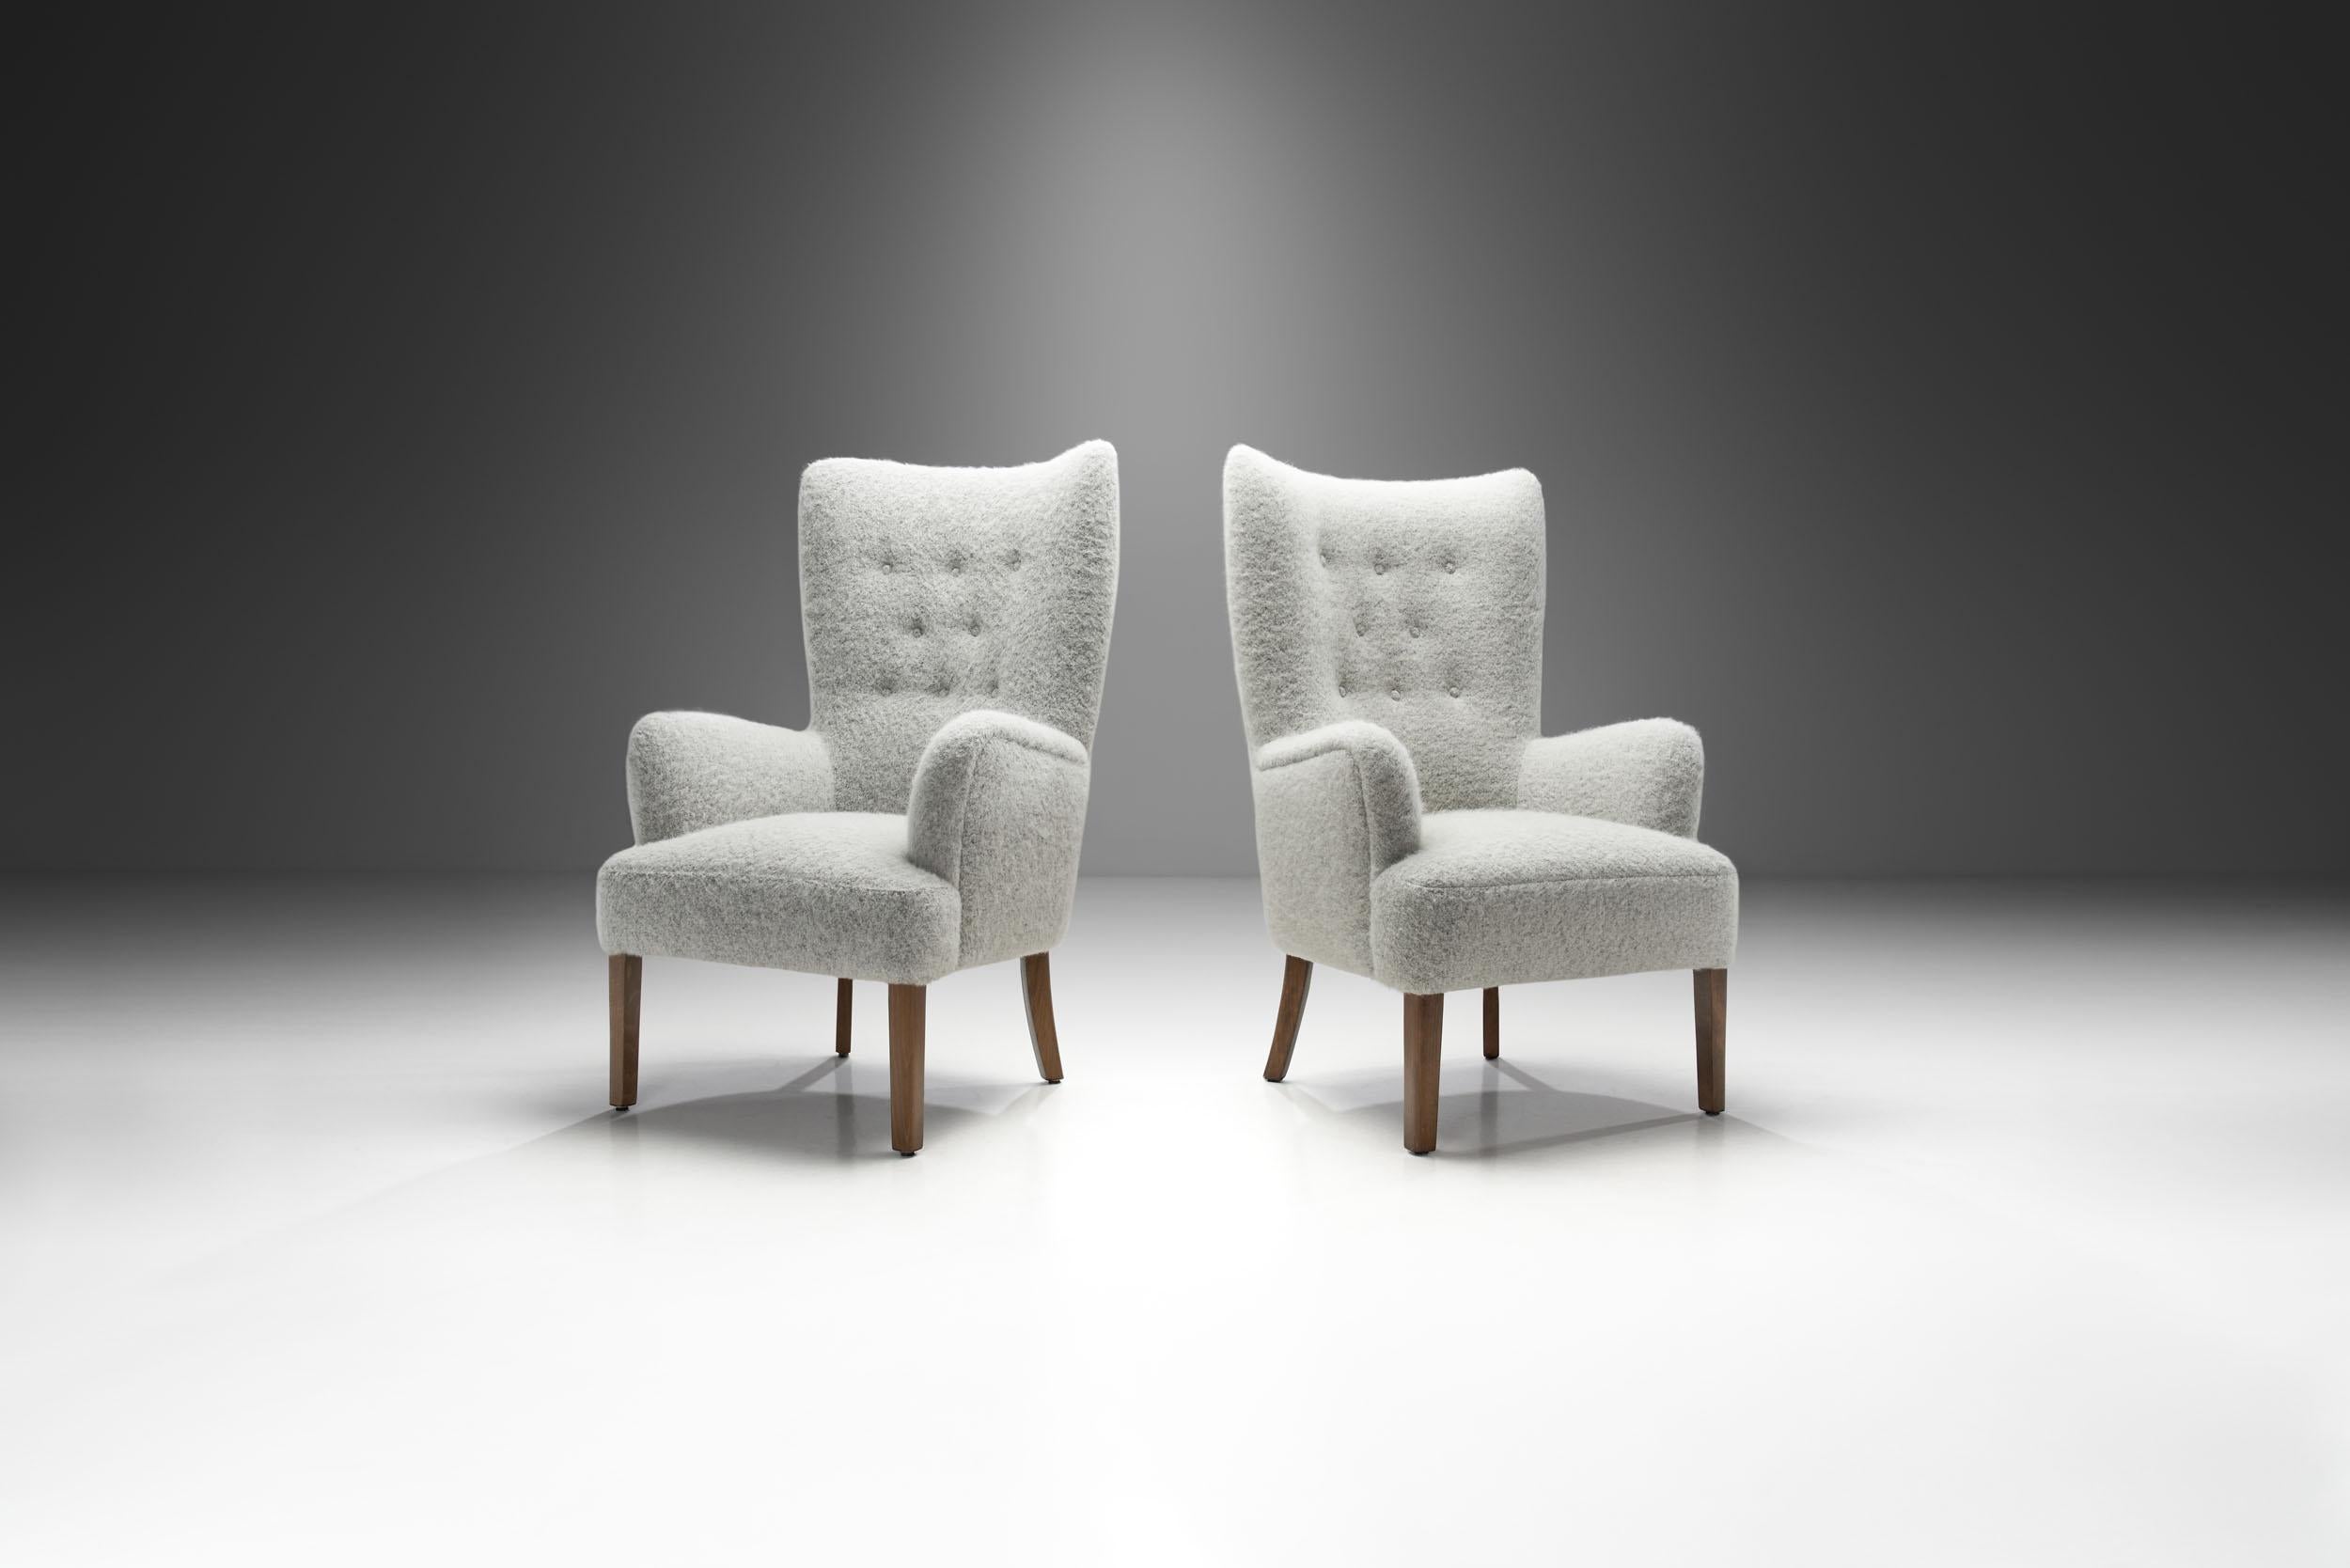 Scandinavian Modern Ole Wanscher “Model 1673” High Back Chairs for Fritz Hansen, Denmark 1940s For Sale